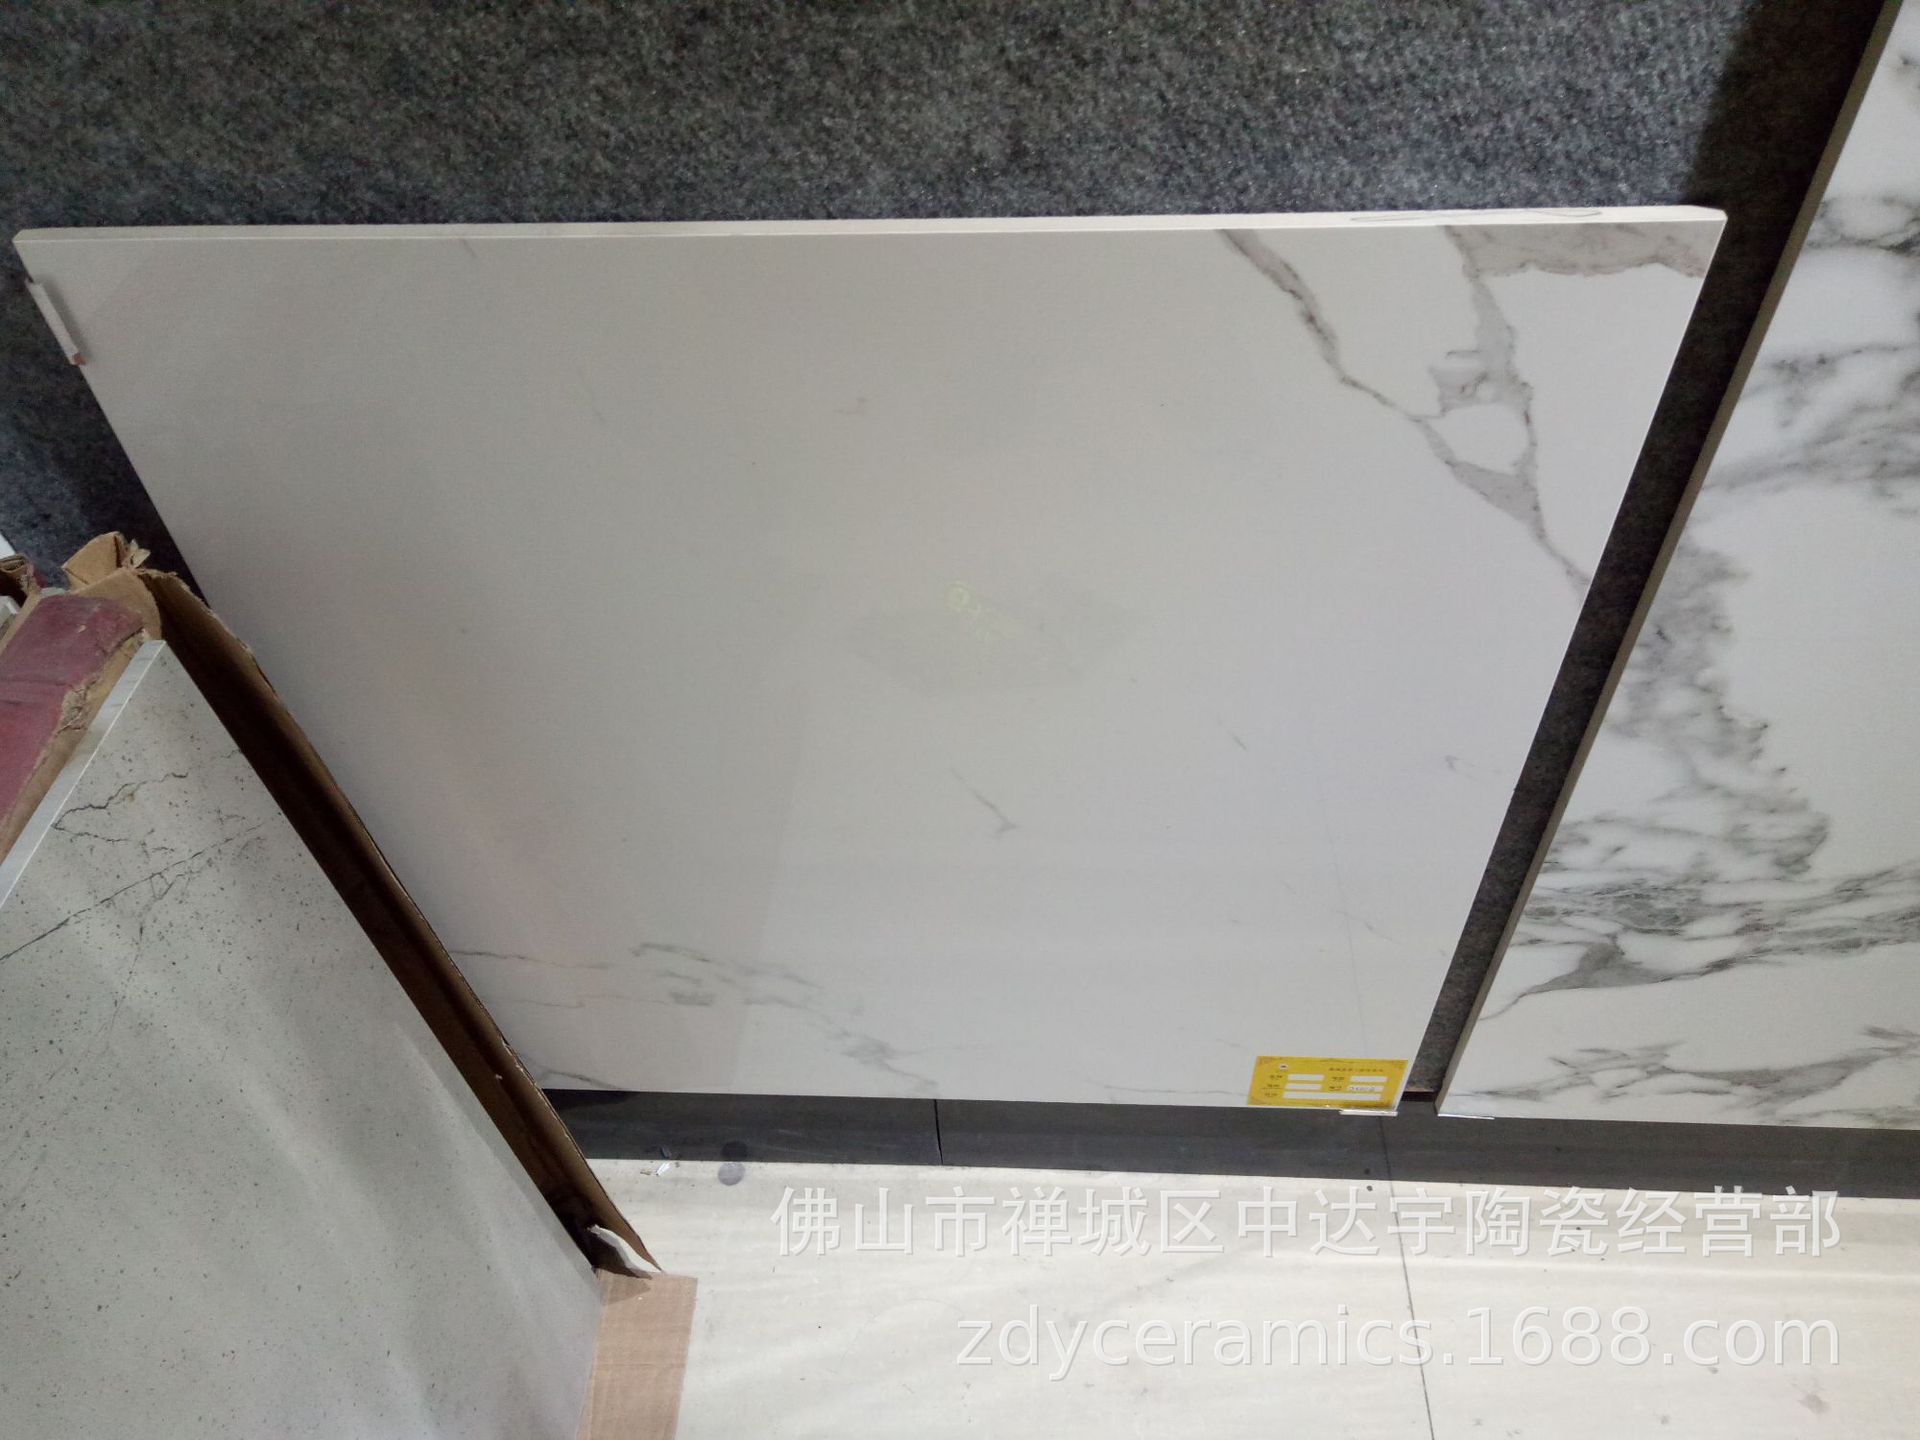 雪花白爵士白600x600负离子金刚大理石防滑防潮S客厅墙面地面瓷砖SH示例图7